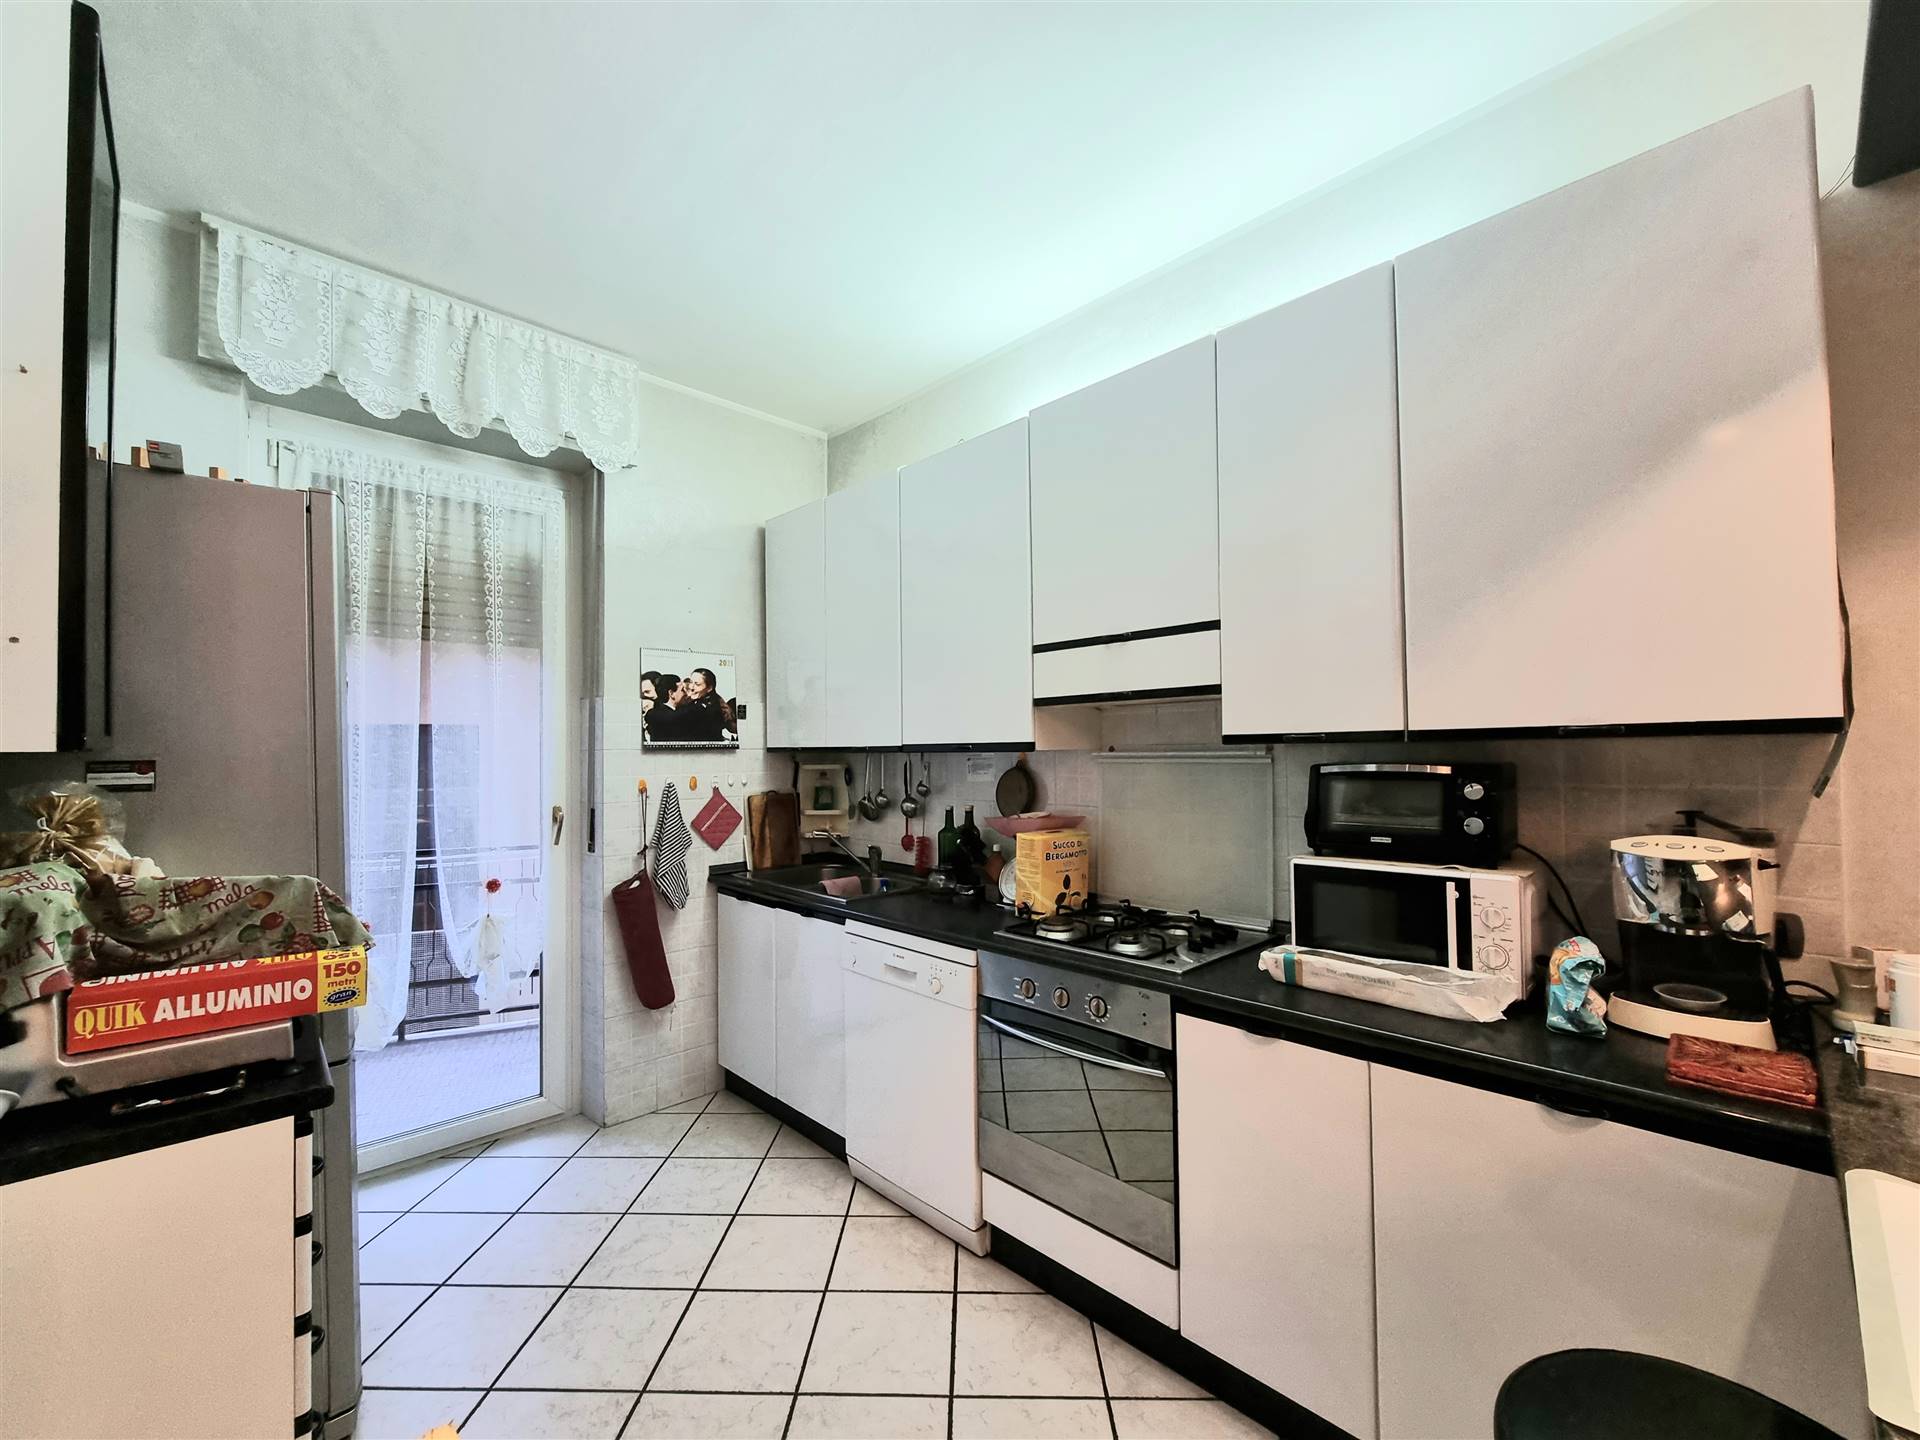 Appartamento in vendita a Cossato, 5 locali, prezzo € 83.000 | PortaleAgenzieImmobiliari.it